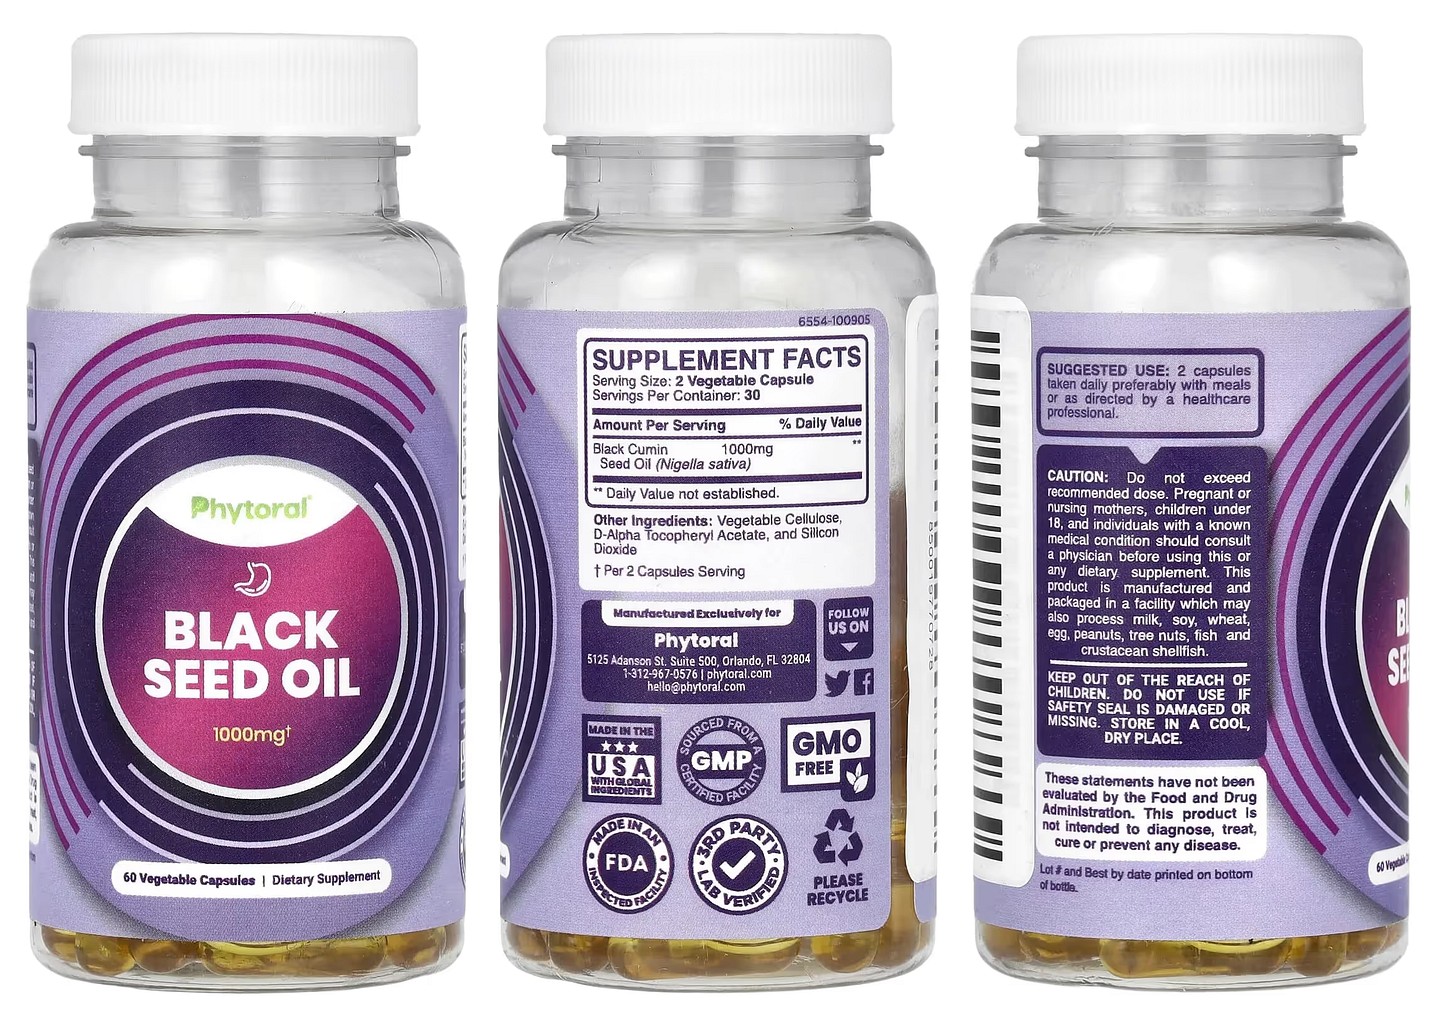 Phytoral, Black Seed Oil packaging